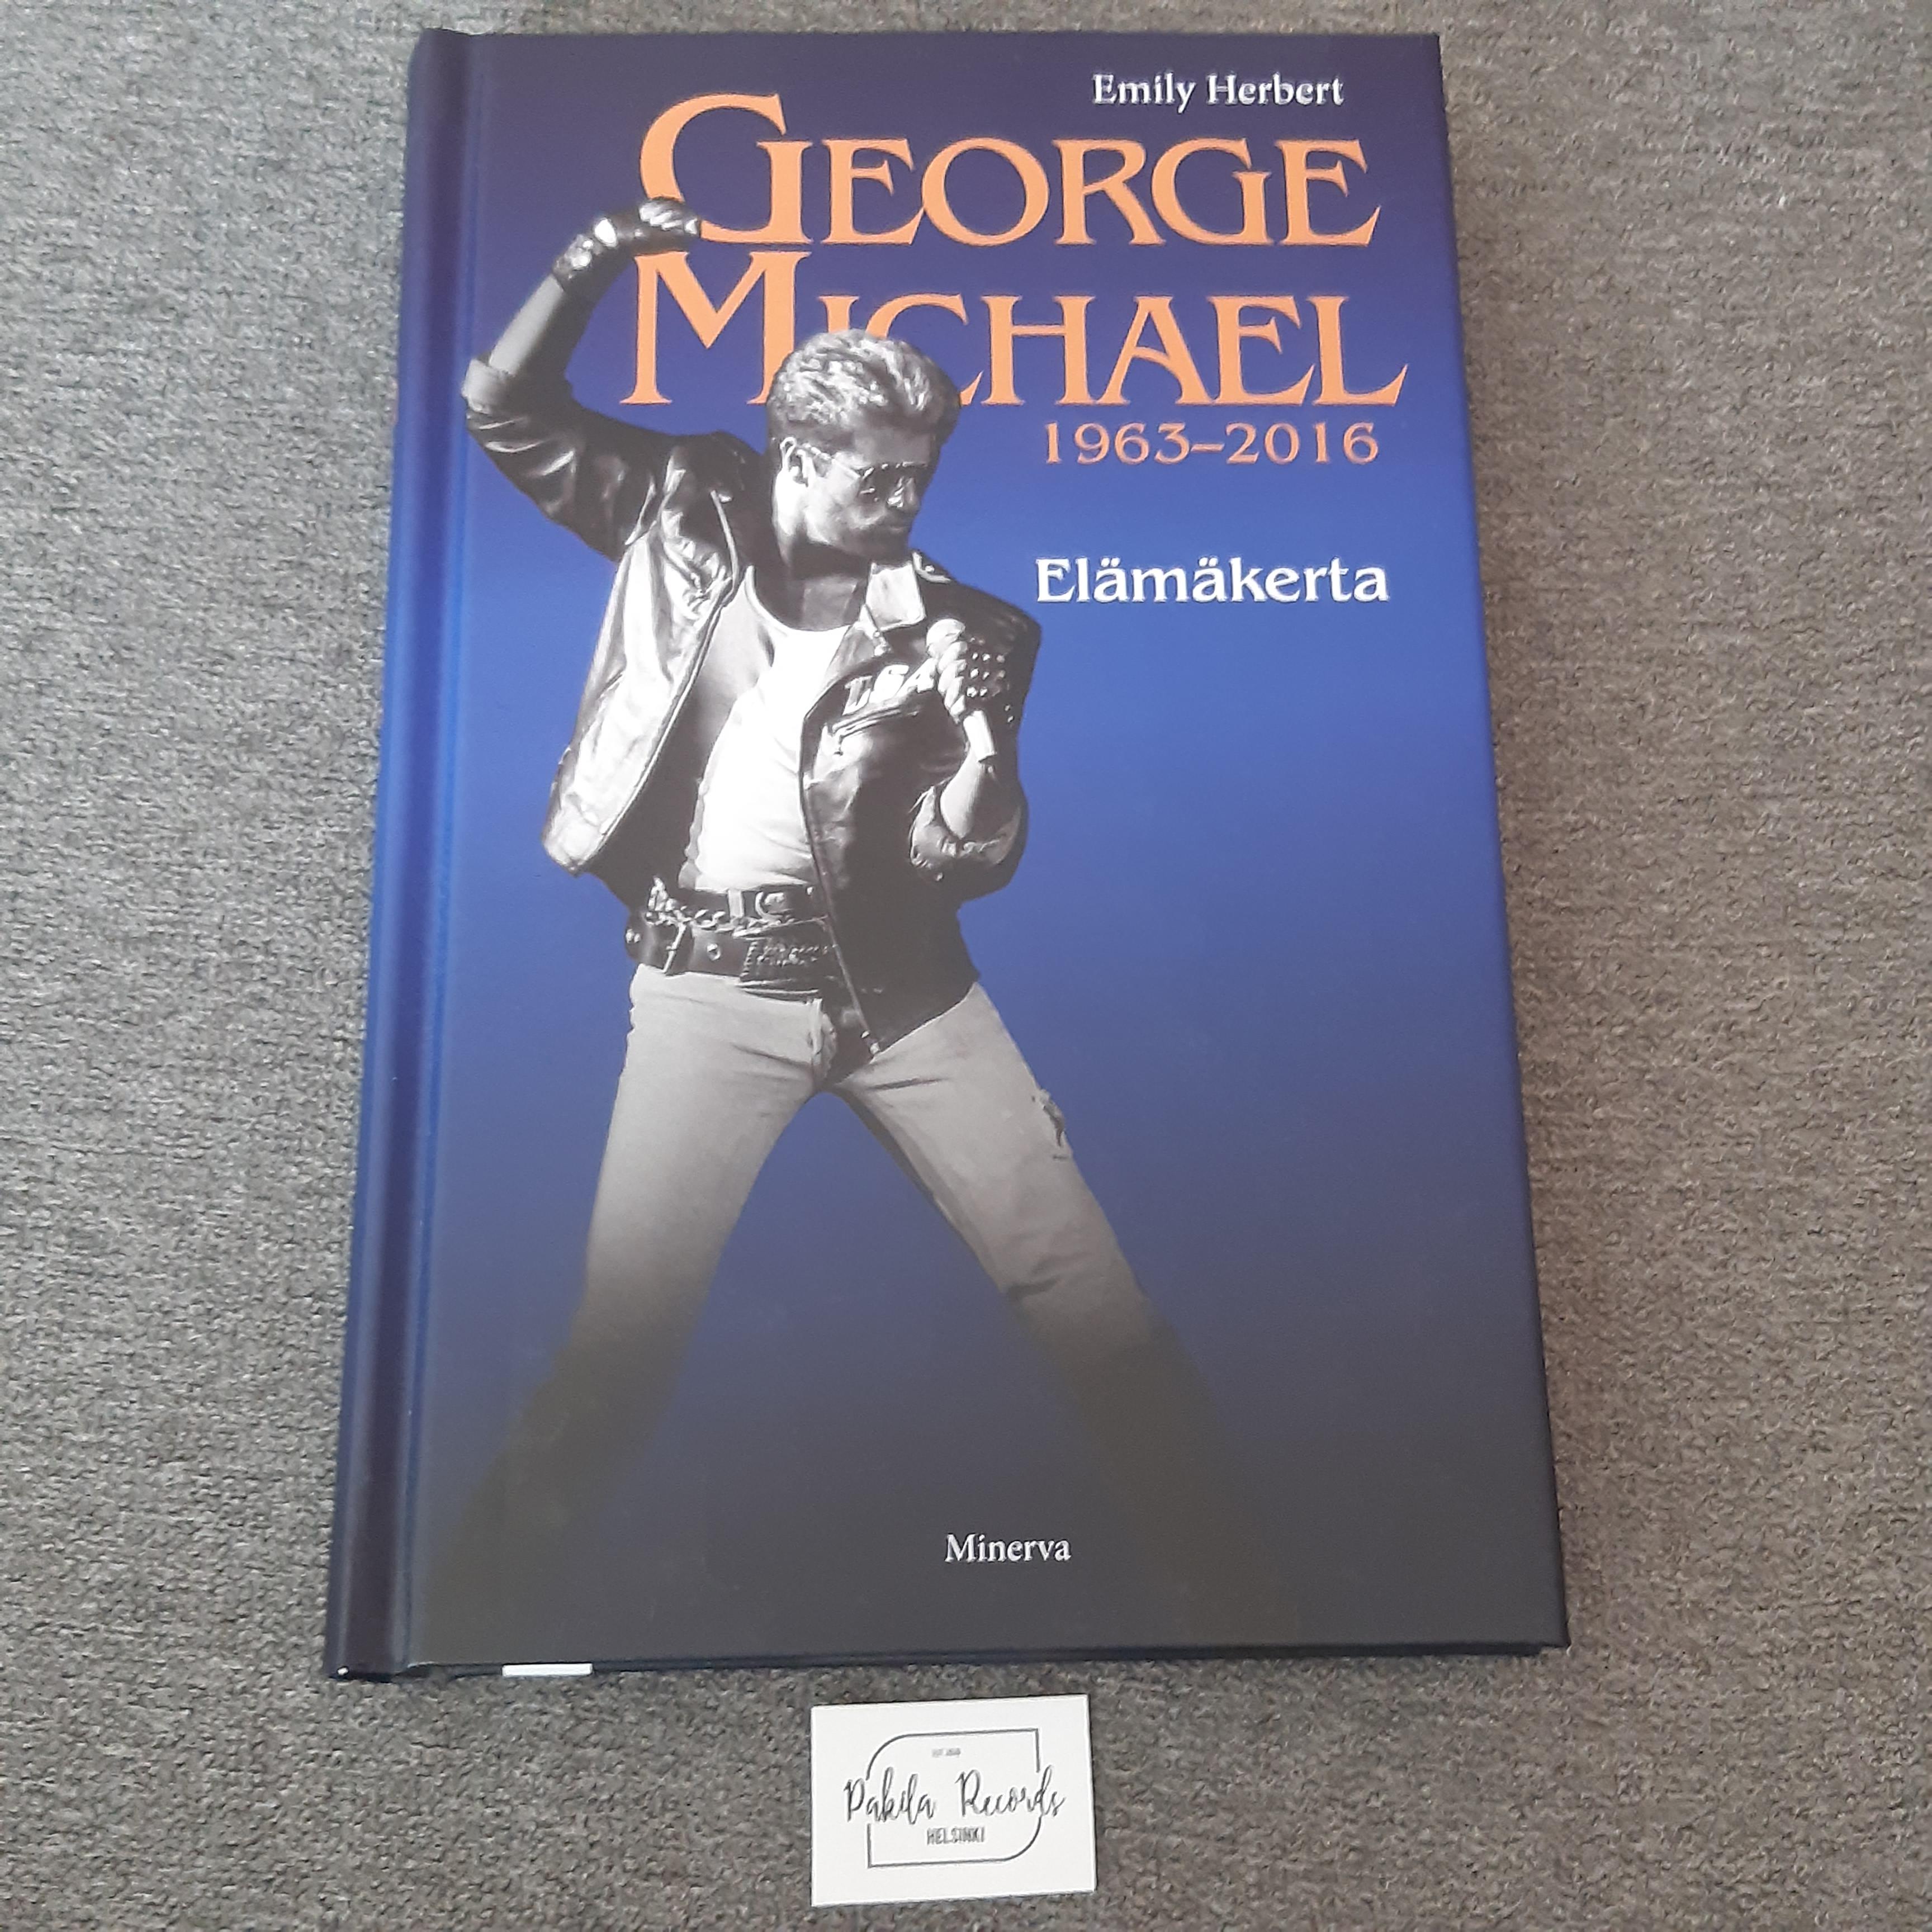 George Michael, Elämäkerta - Emily Herbert - Kirja (käytetty)